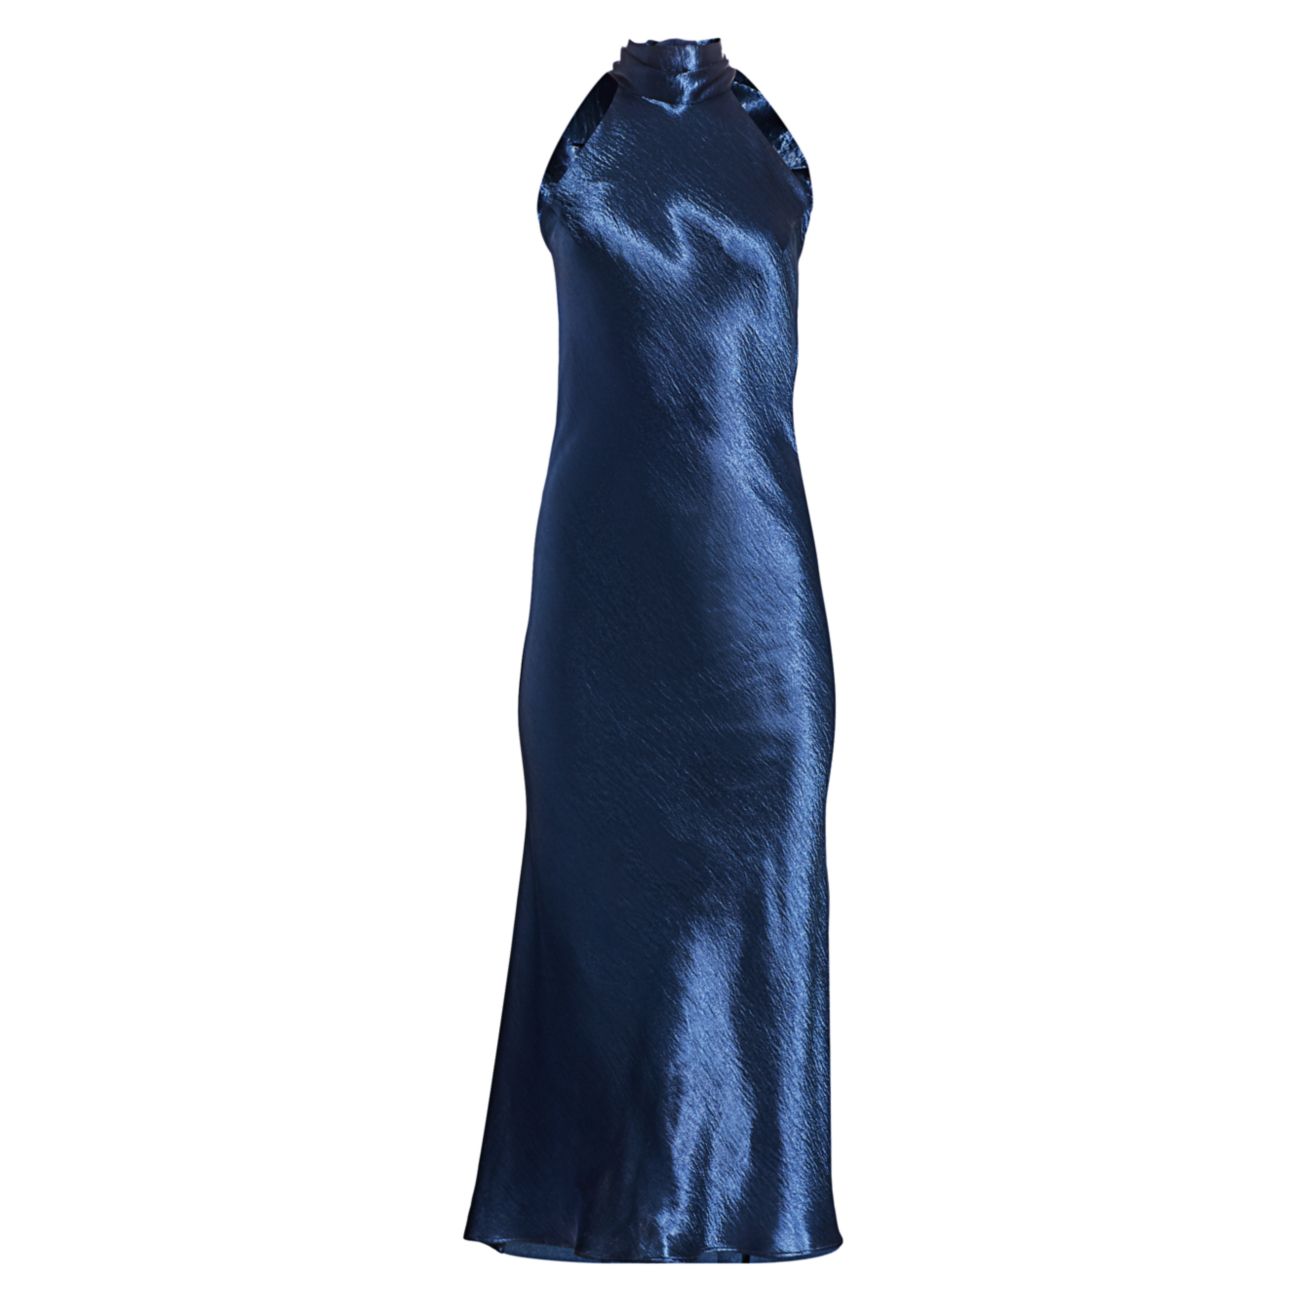 Атласное платье с бретельками Sienna металлизированного цвета Galvan